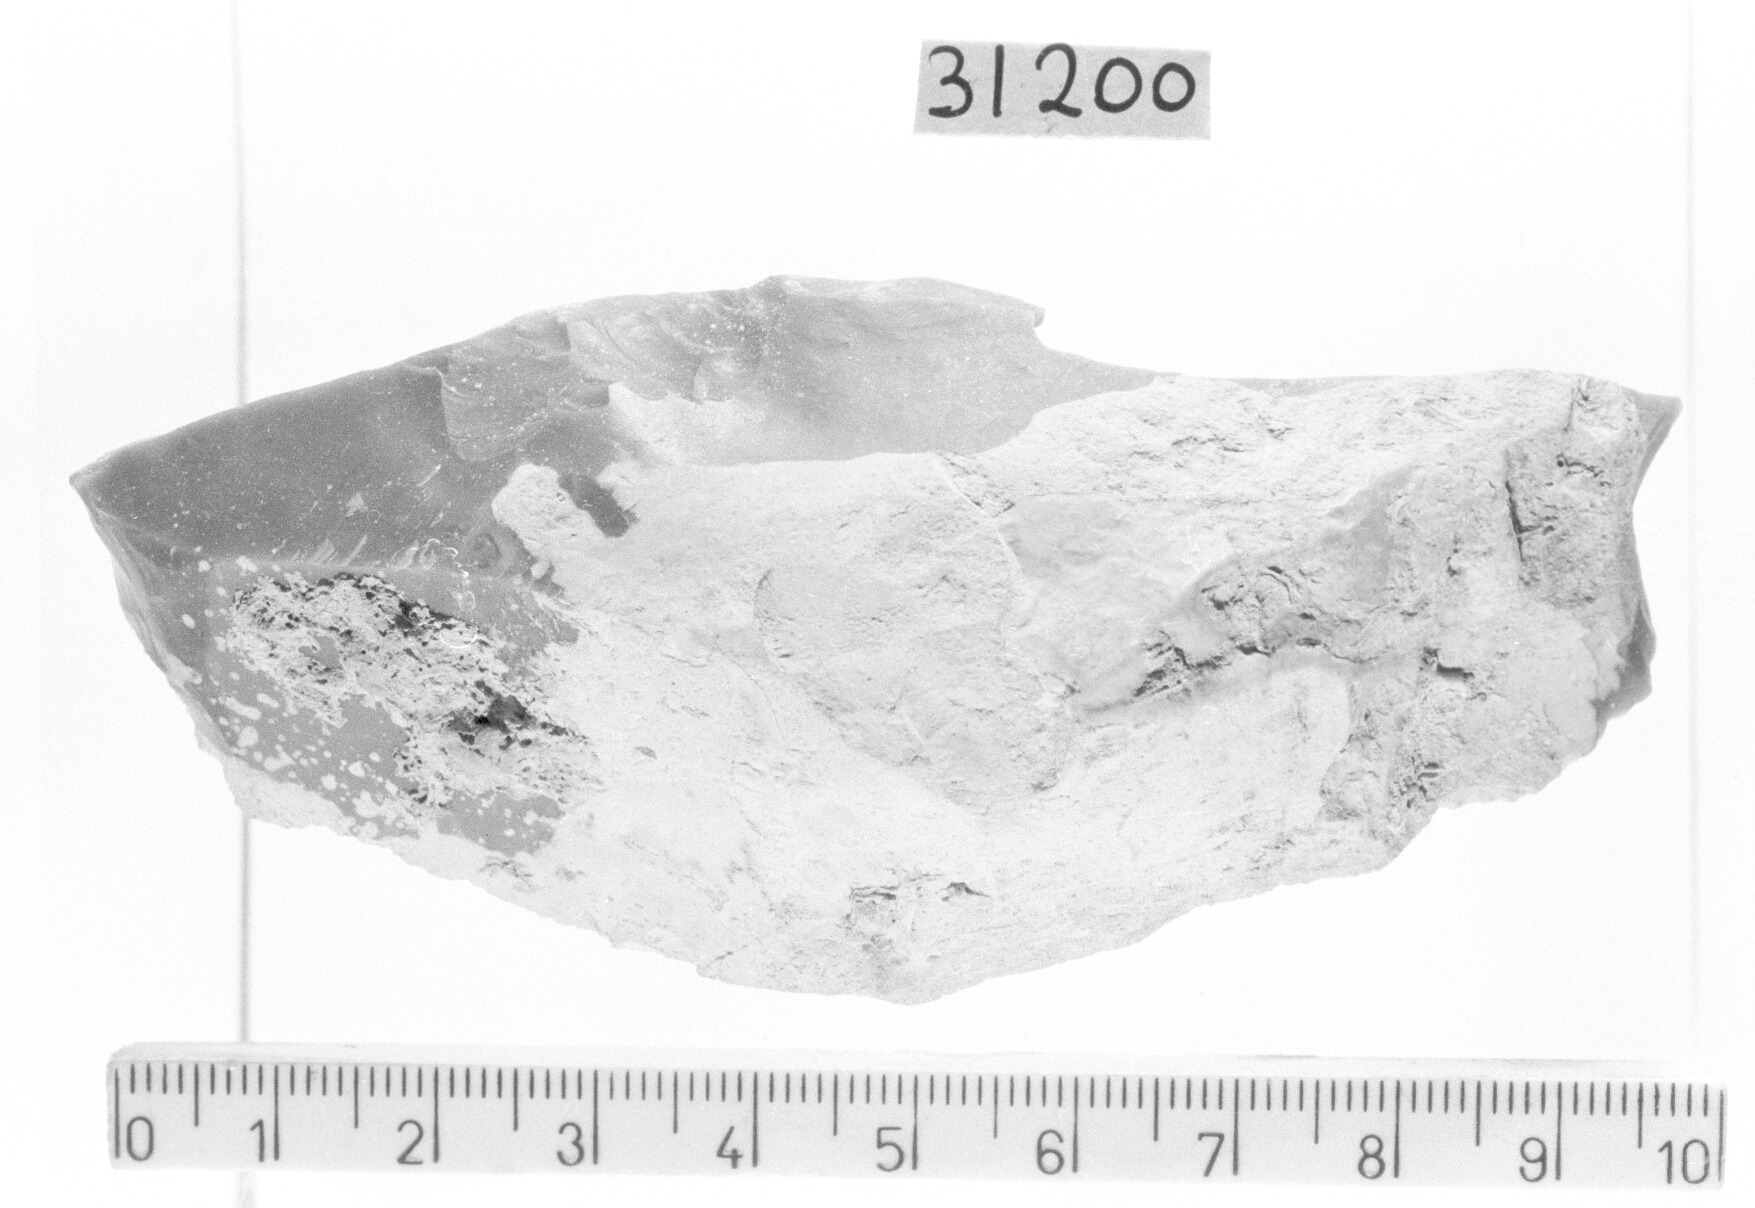 bulino a stacco laterale su ritocco trasversale - Gravettiano (Paleolitico superiore)